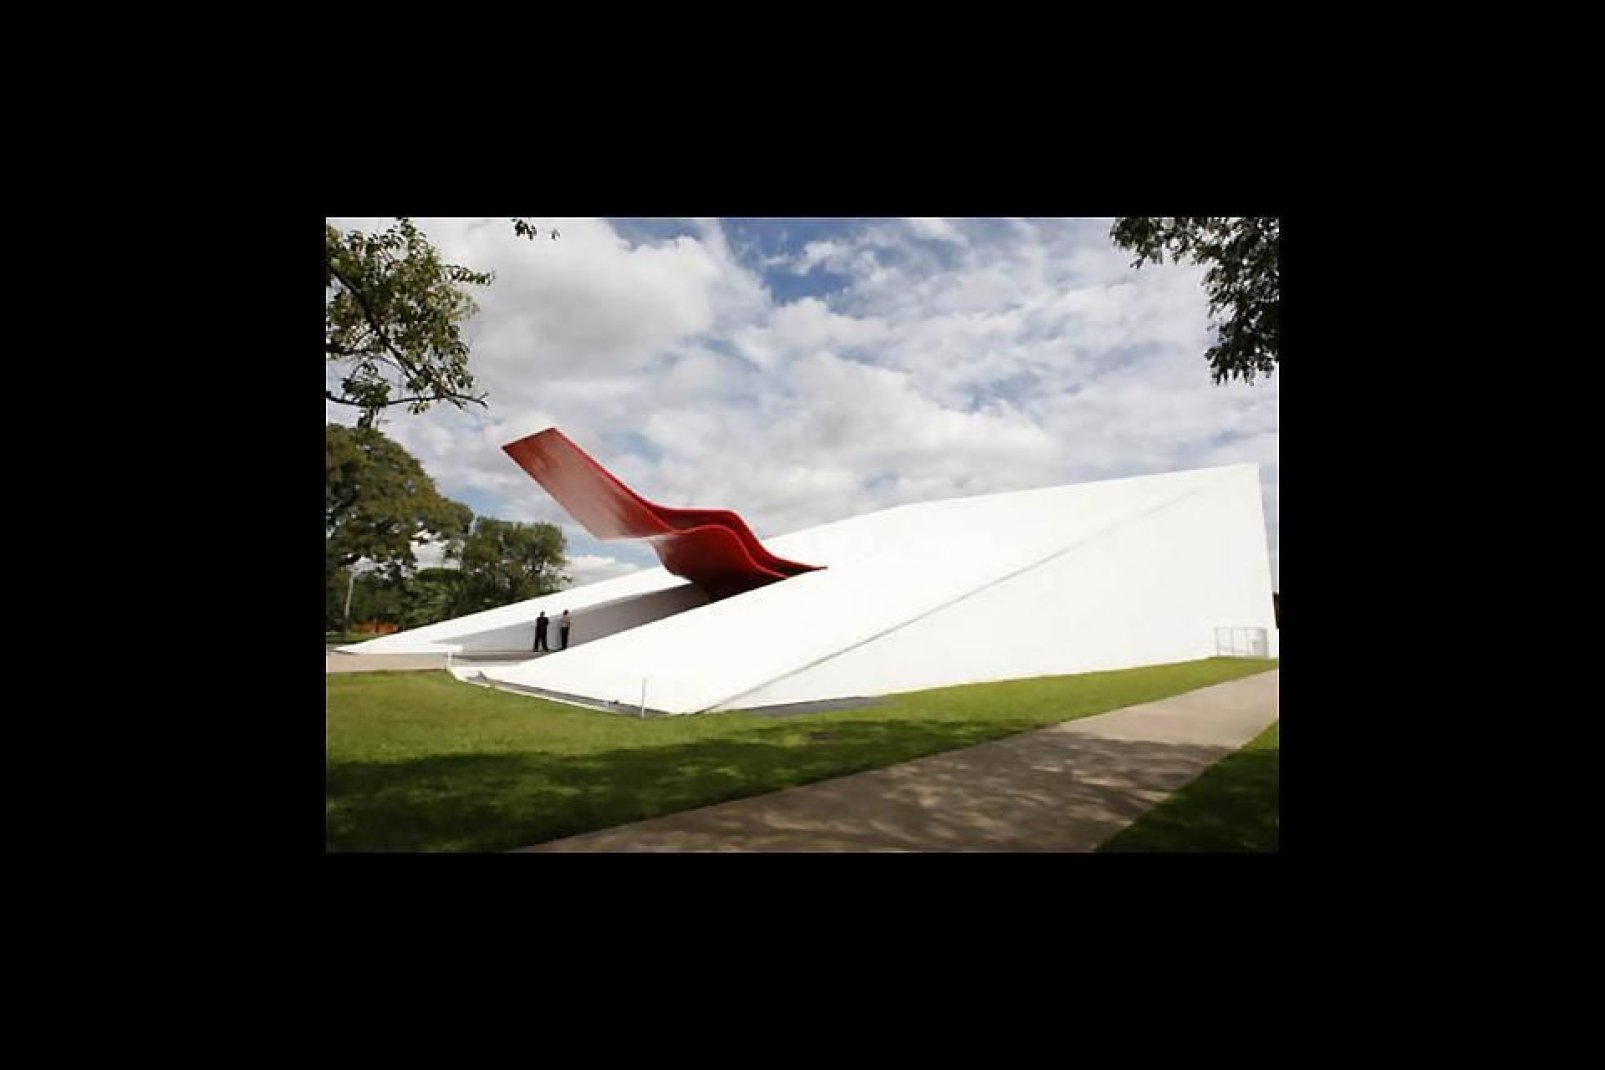 Le dernier projet de Niemeyer au sein du parc, a été inauguré en octobre 2005. Il possède 800 places et un espace modulaire peut accueillir jusqu'à 15 000 personnes.